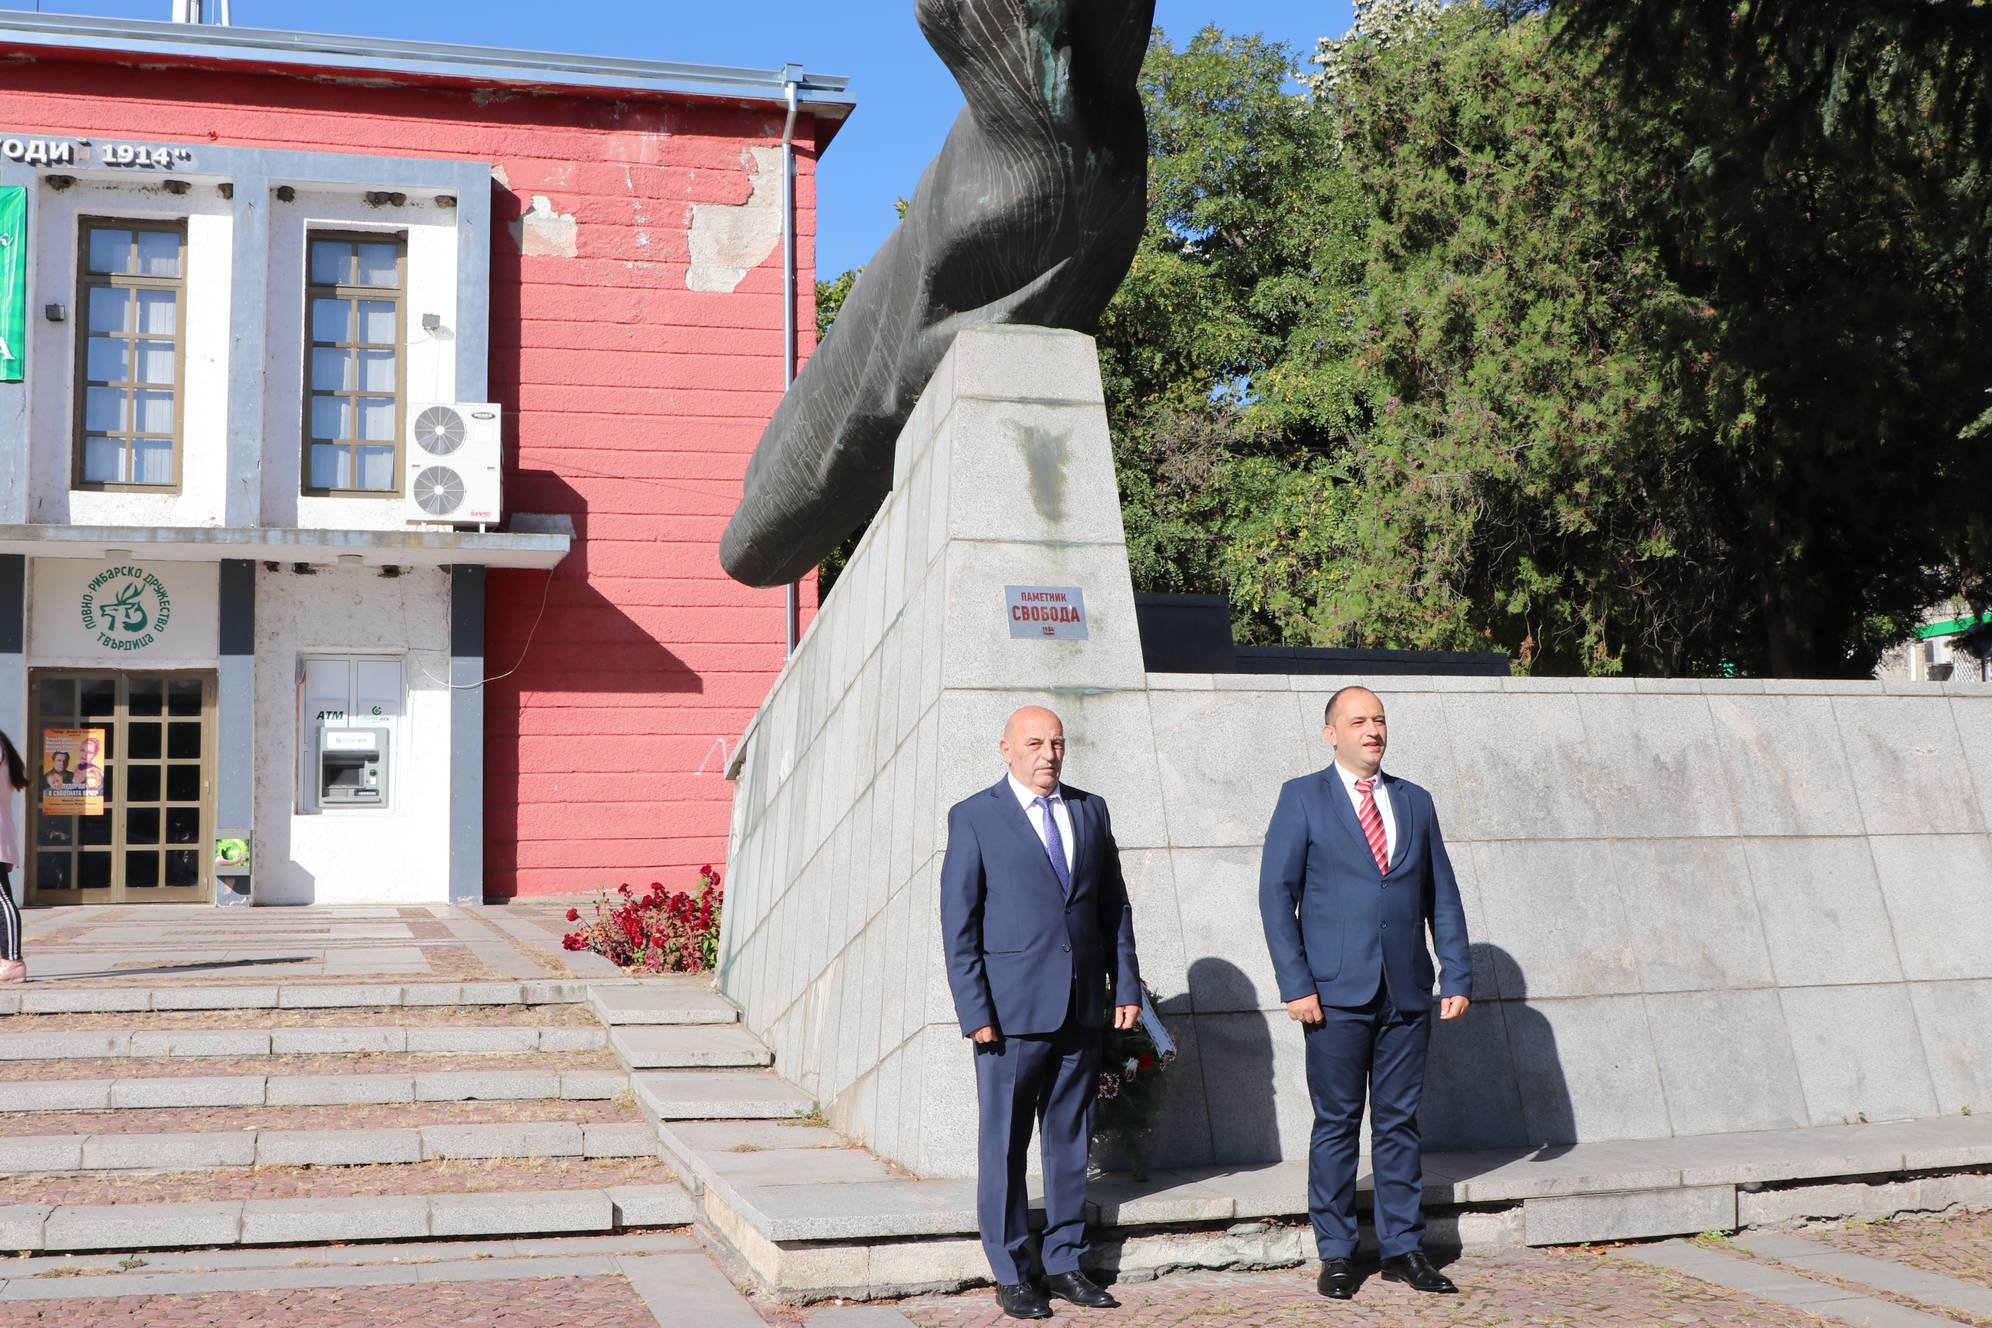 Кметът и зам.-кметът на Твърдица поднасят венец пред паметник на свободата